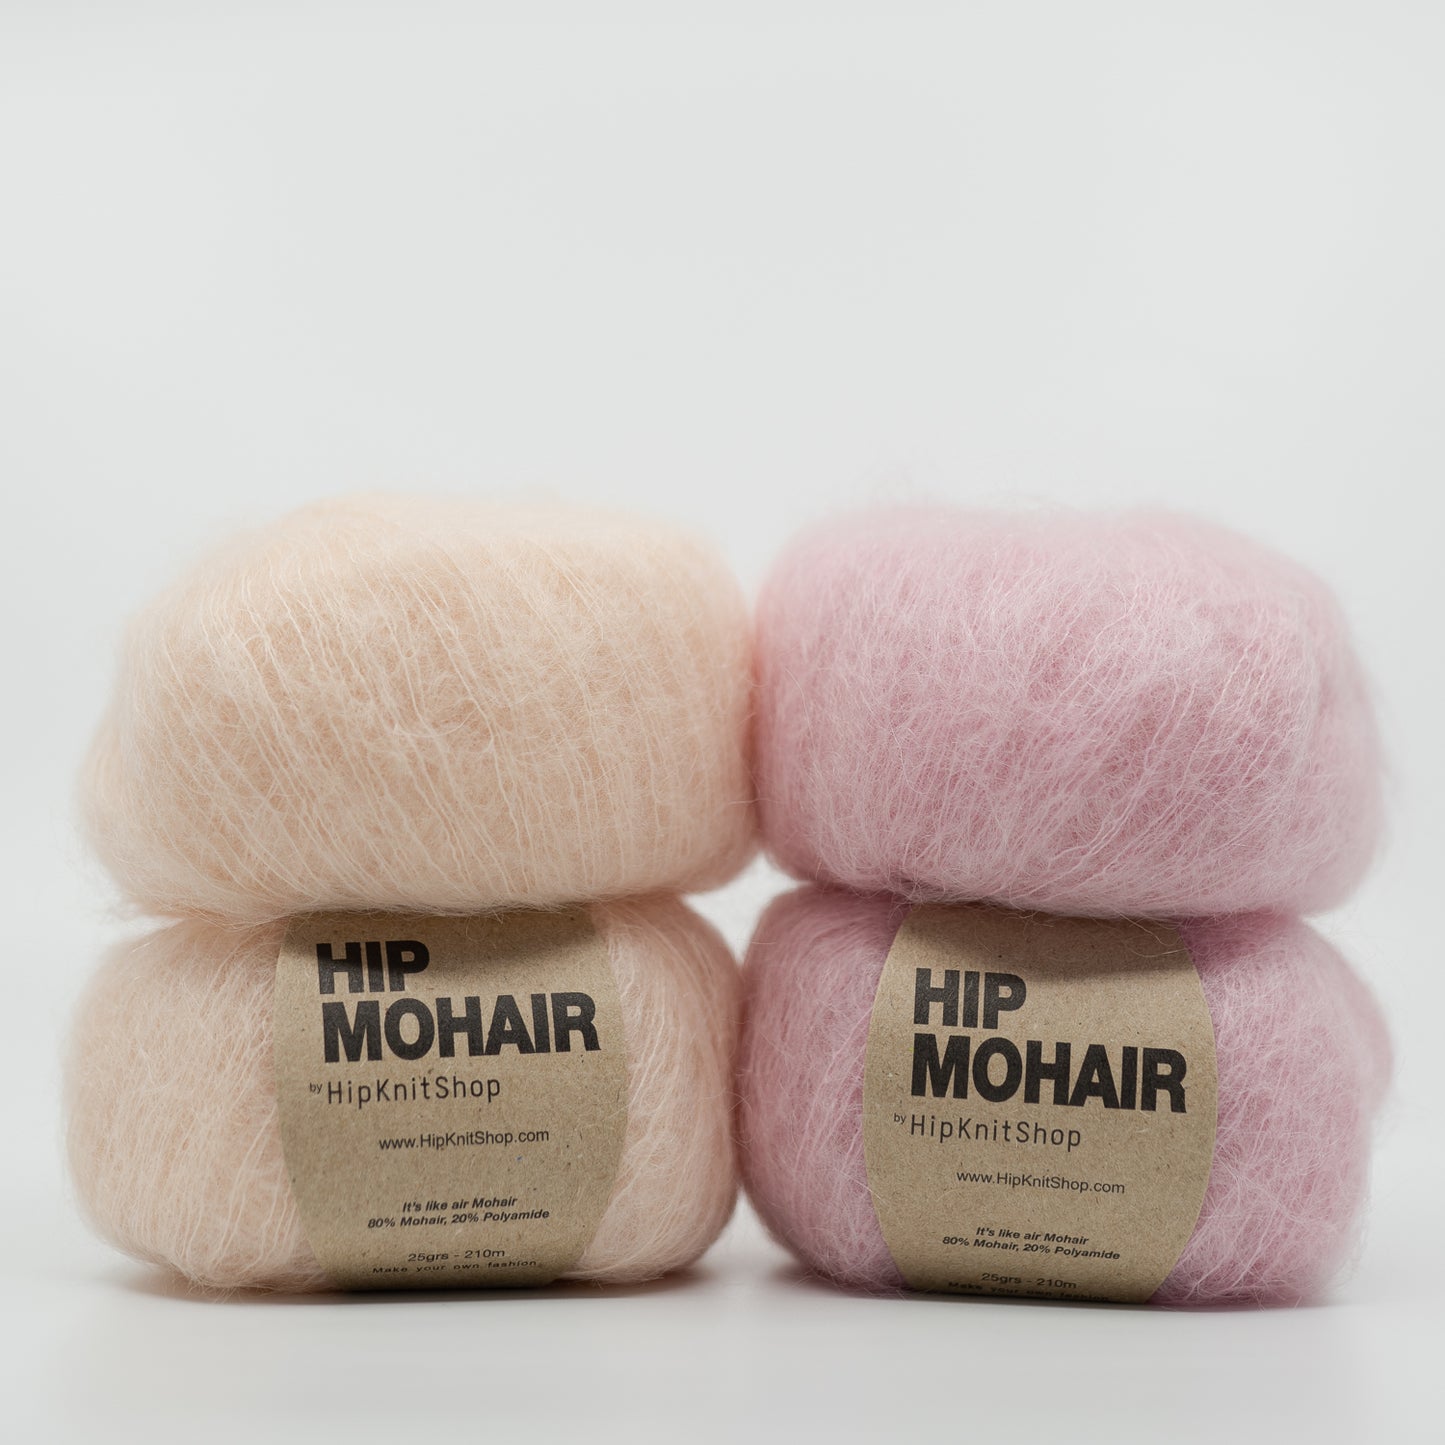 Hip Mohair - Fairytail Pink